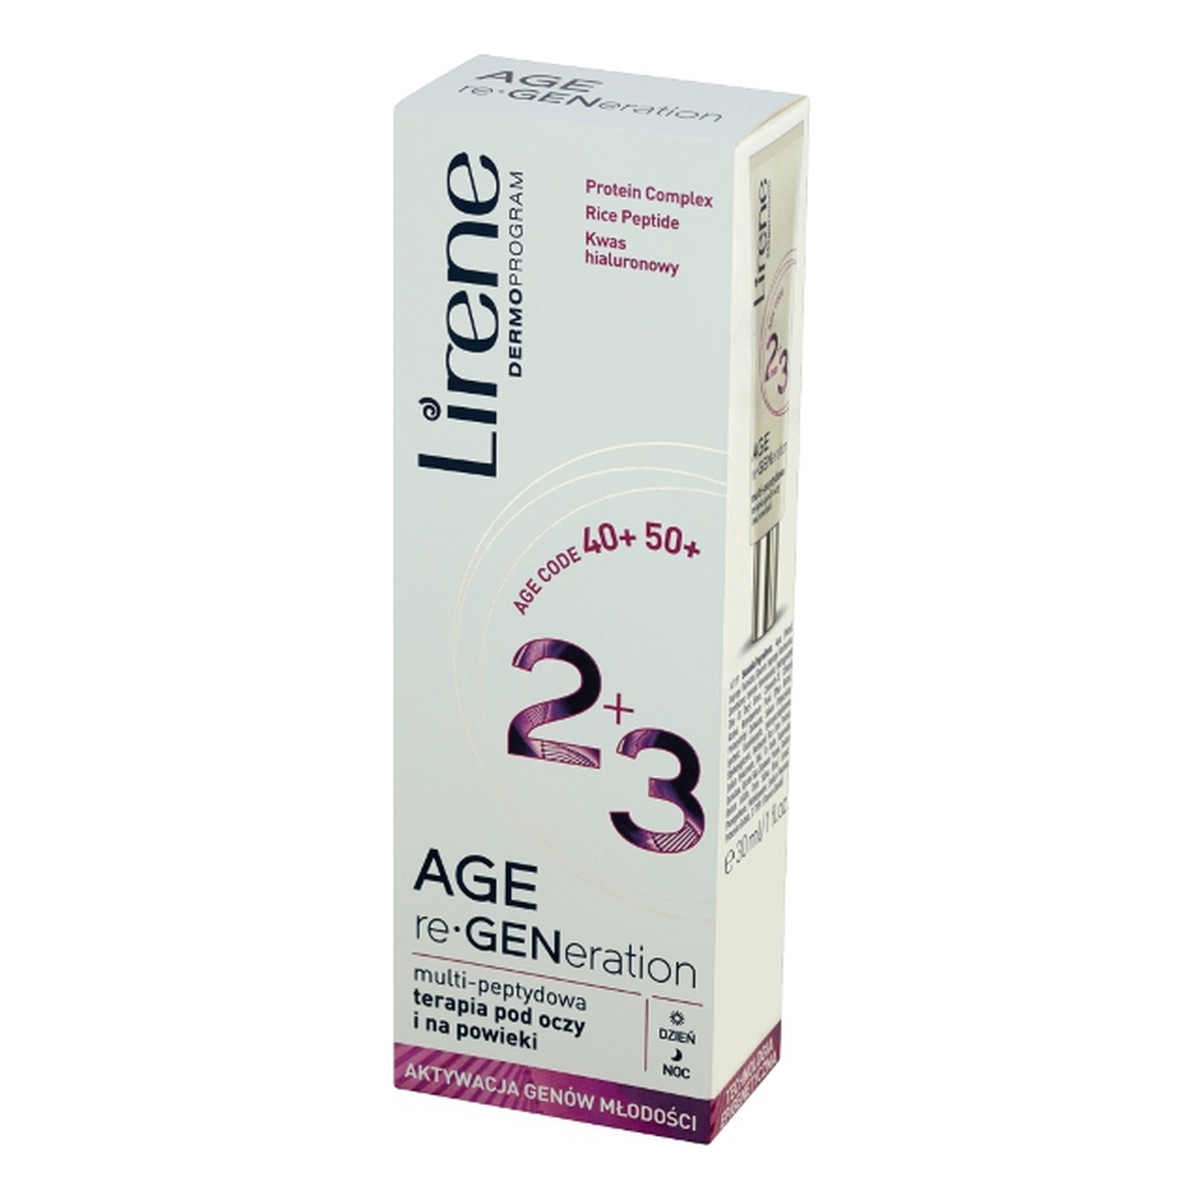 Lirene Age re-Generation DermoProgram 40+ 50+ Multi-peptydowa terapia pod oczy i na powieki 30ml